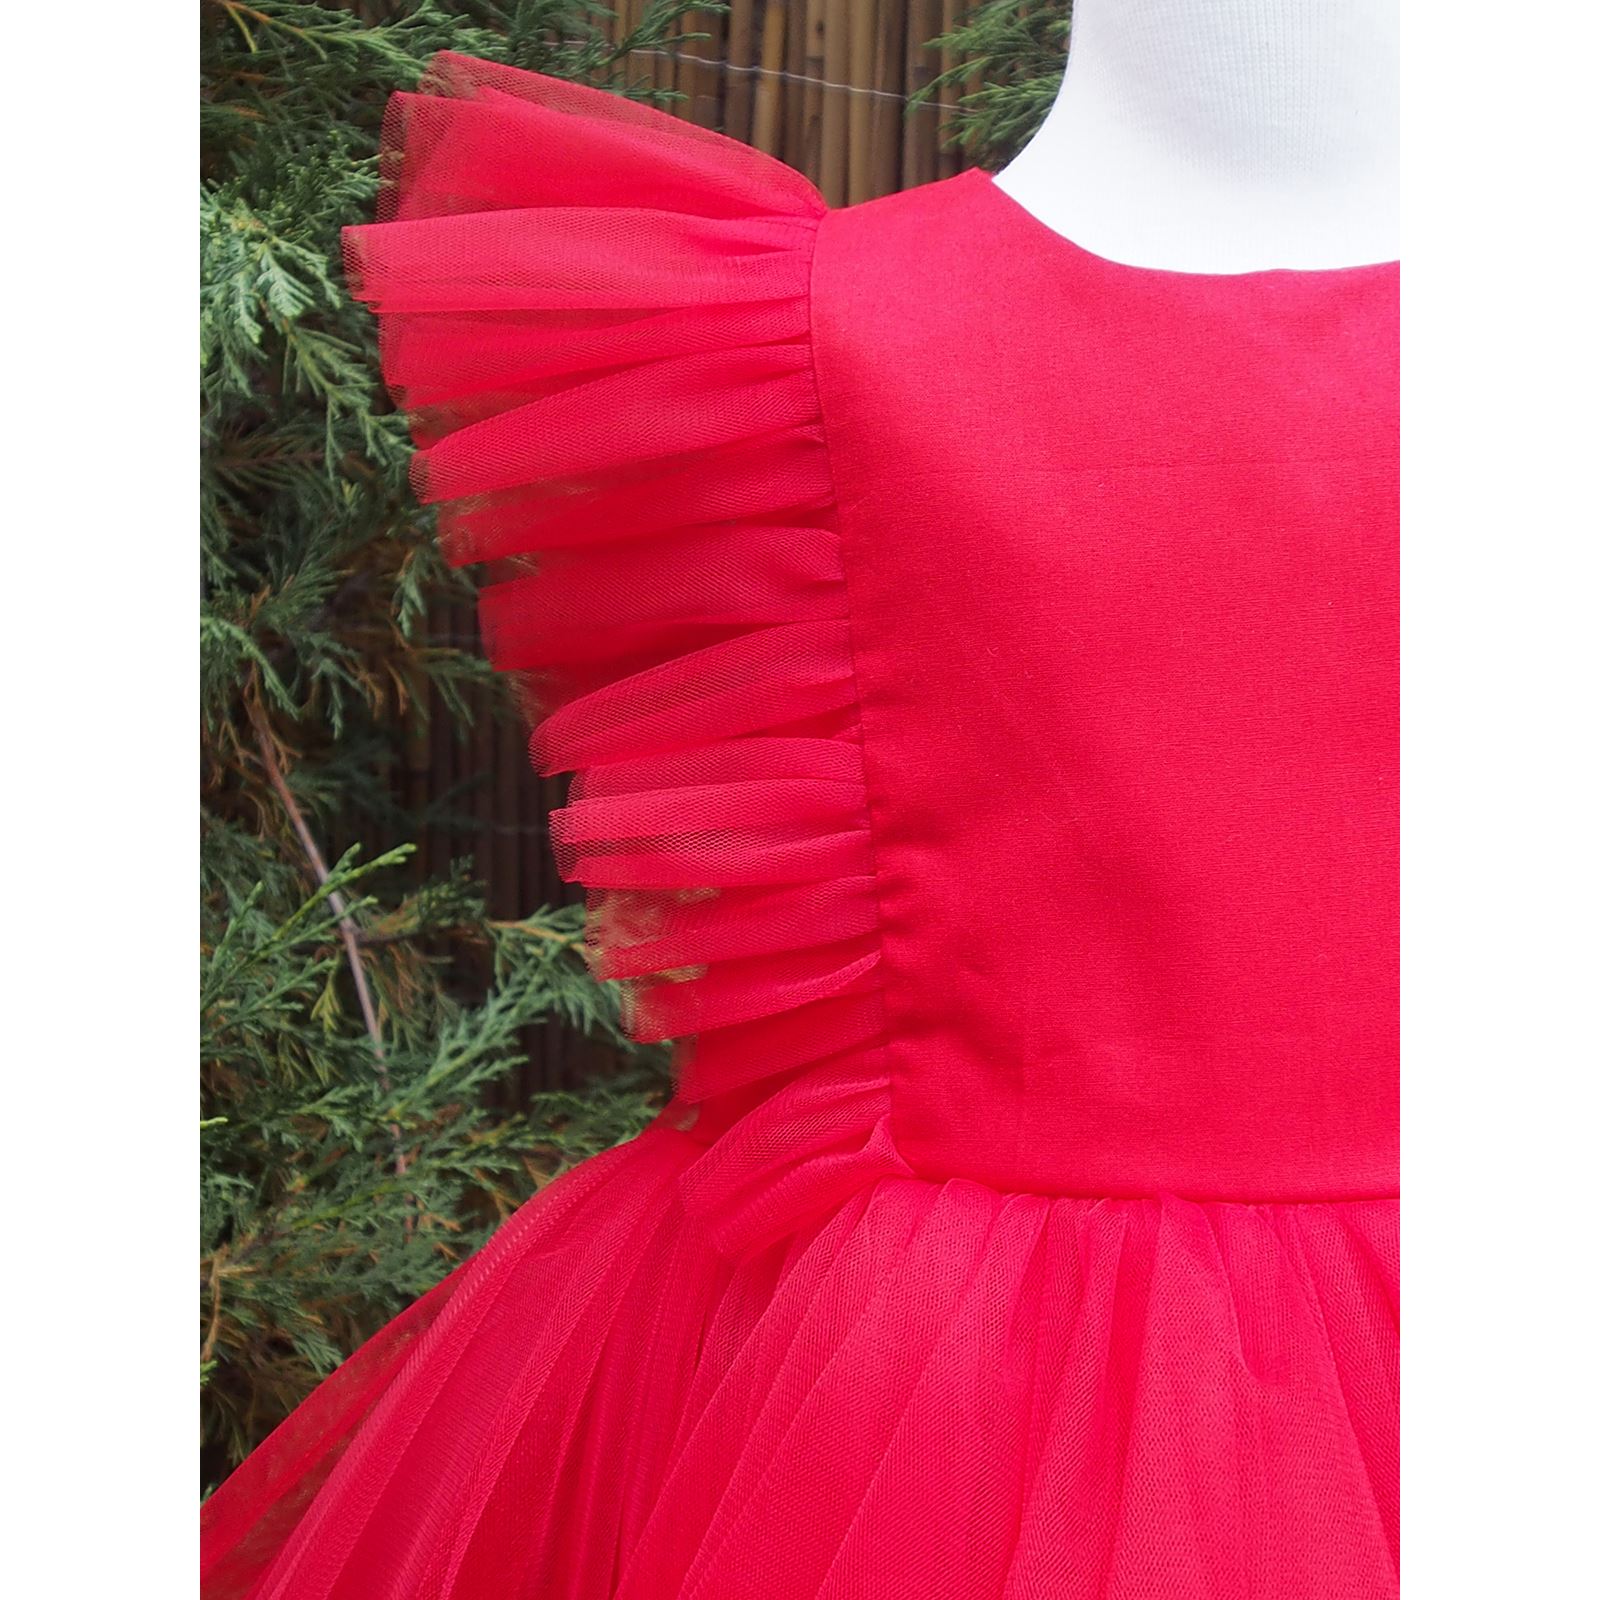 Shecco Babba Tül Detaylı Tütü Elbise Bandana 1-5 Yaş Takım Kırmızı